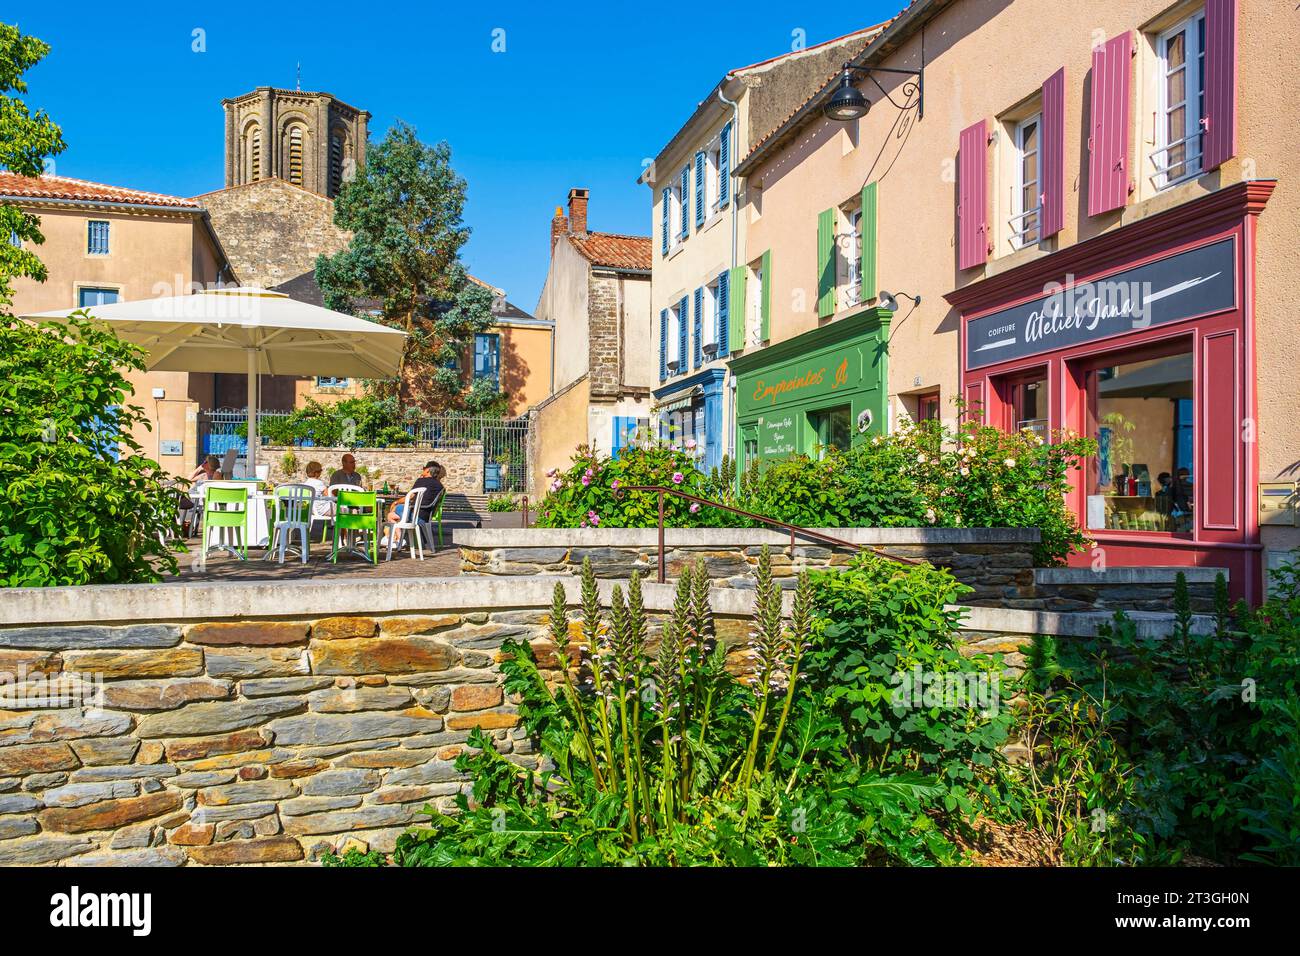 Francia, Vendee, Vouvant, etiquetado Les Plus Beaux Villages de France (los pueblos más bellos de Francia), la plaza principal del Cuerpo de Garde Foto de stock